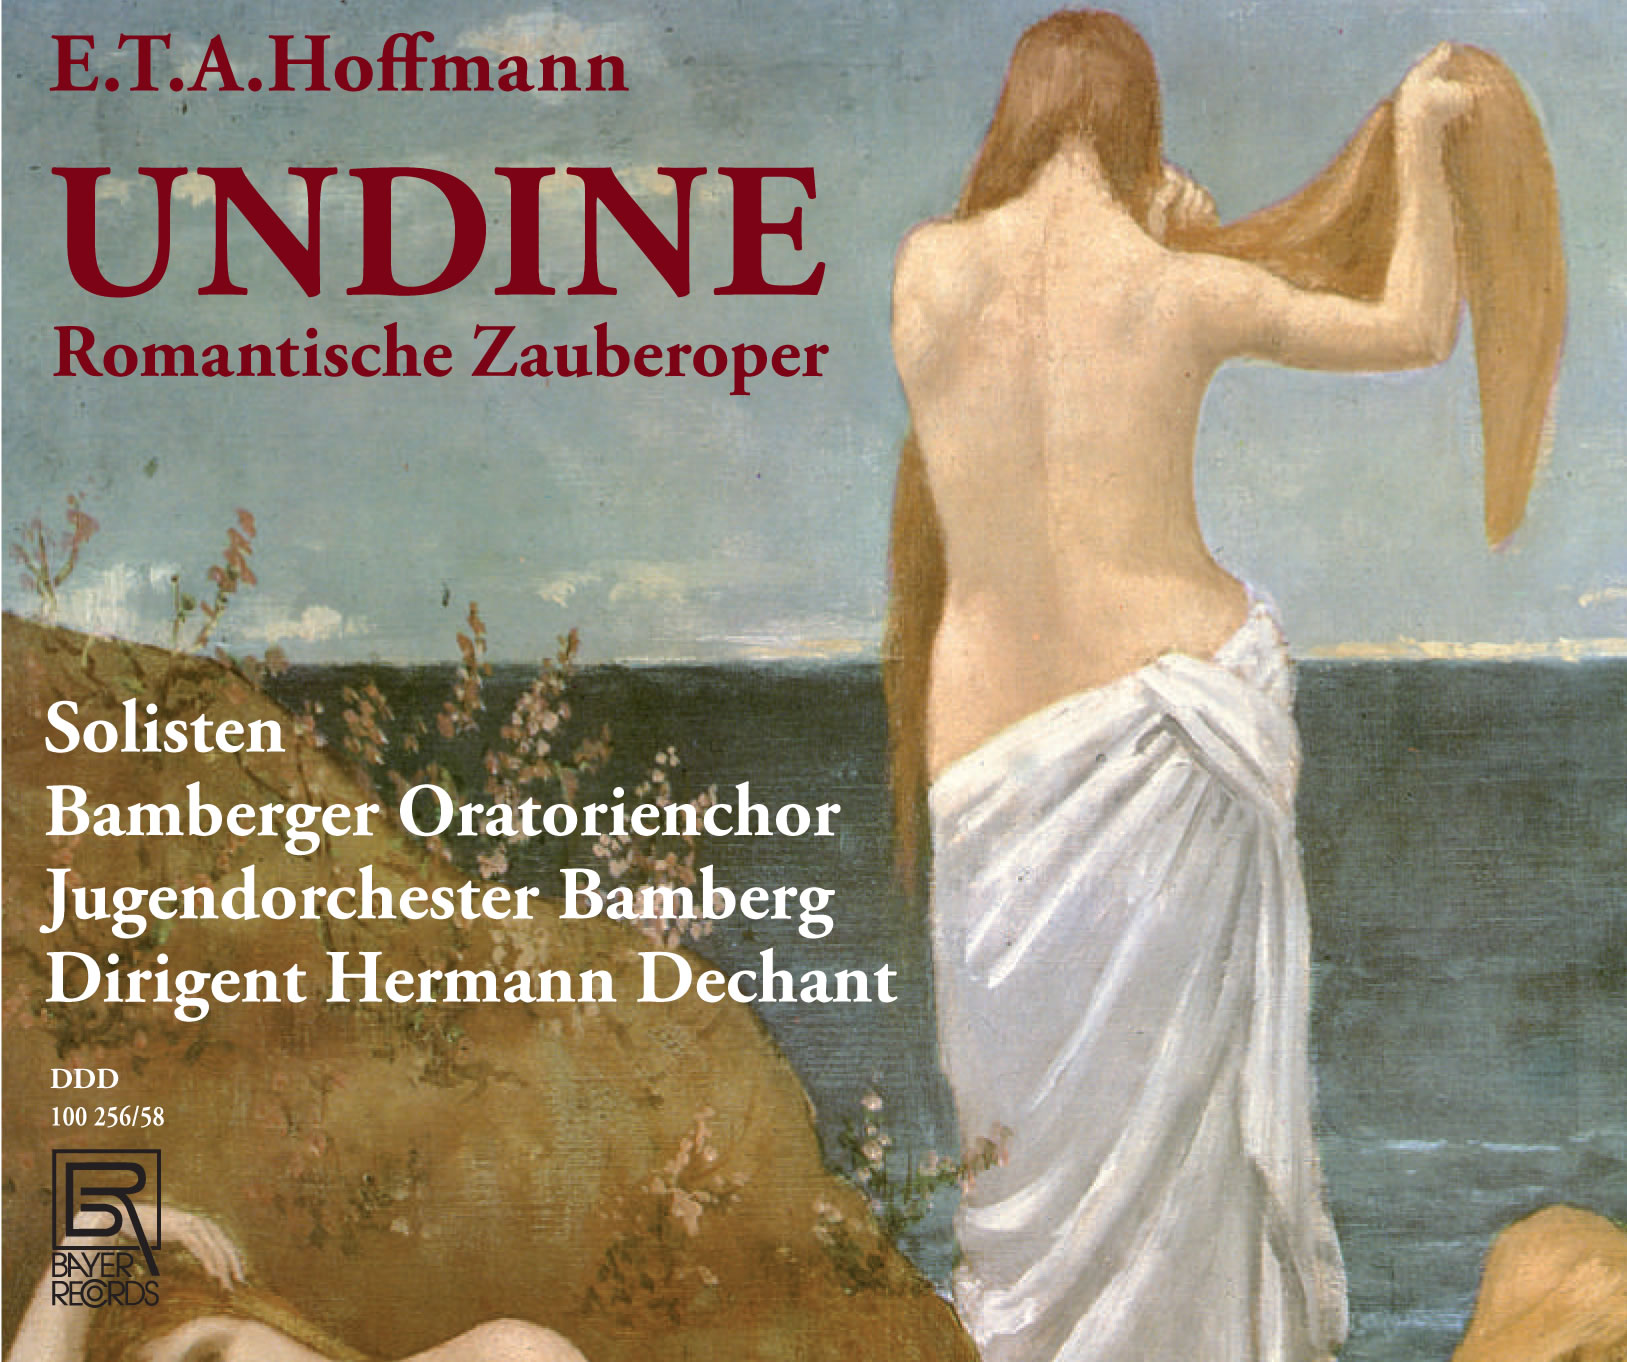 E.T.A. Hoffmann - UNDINE